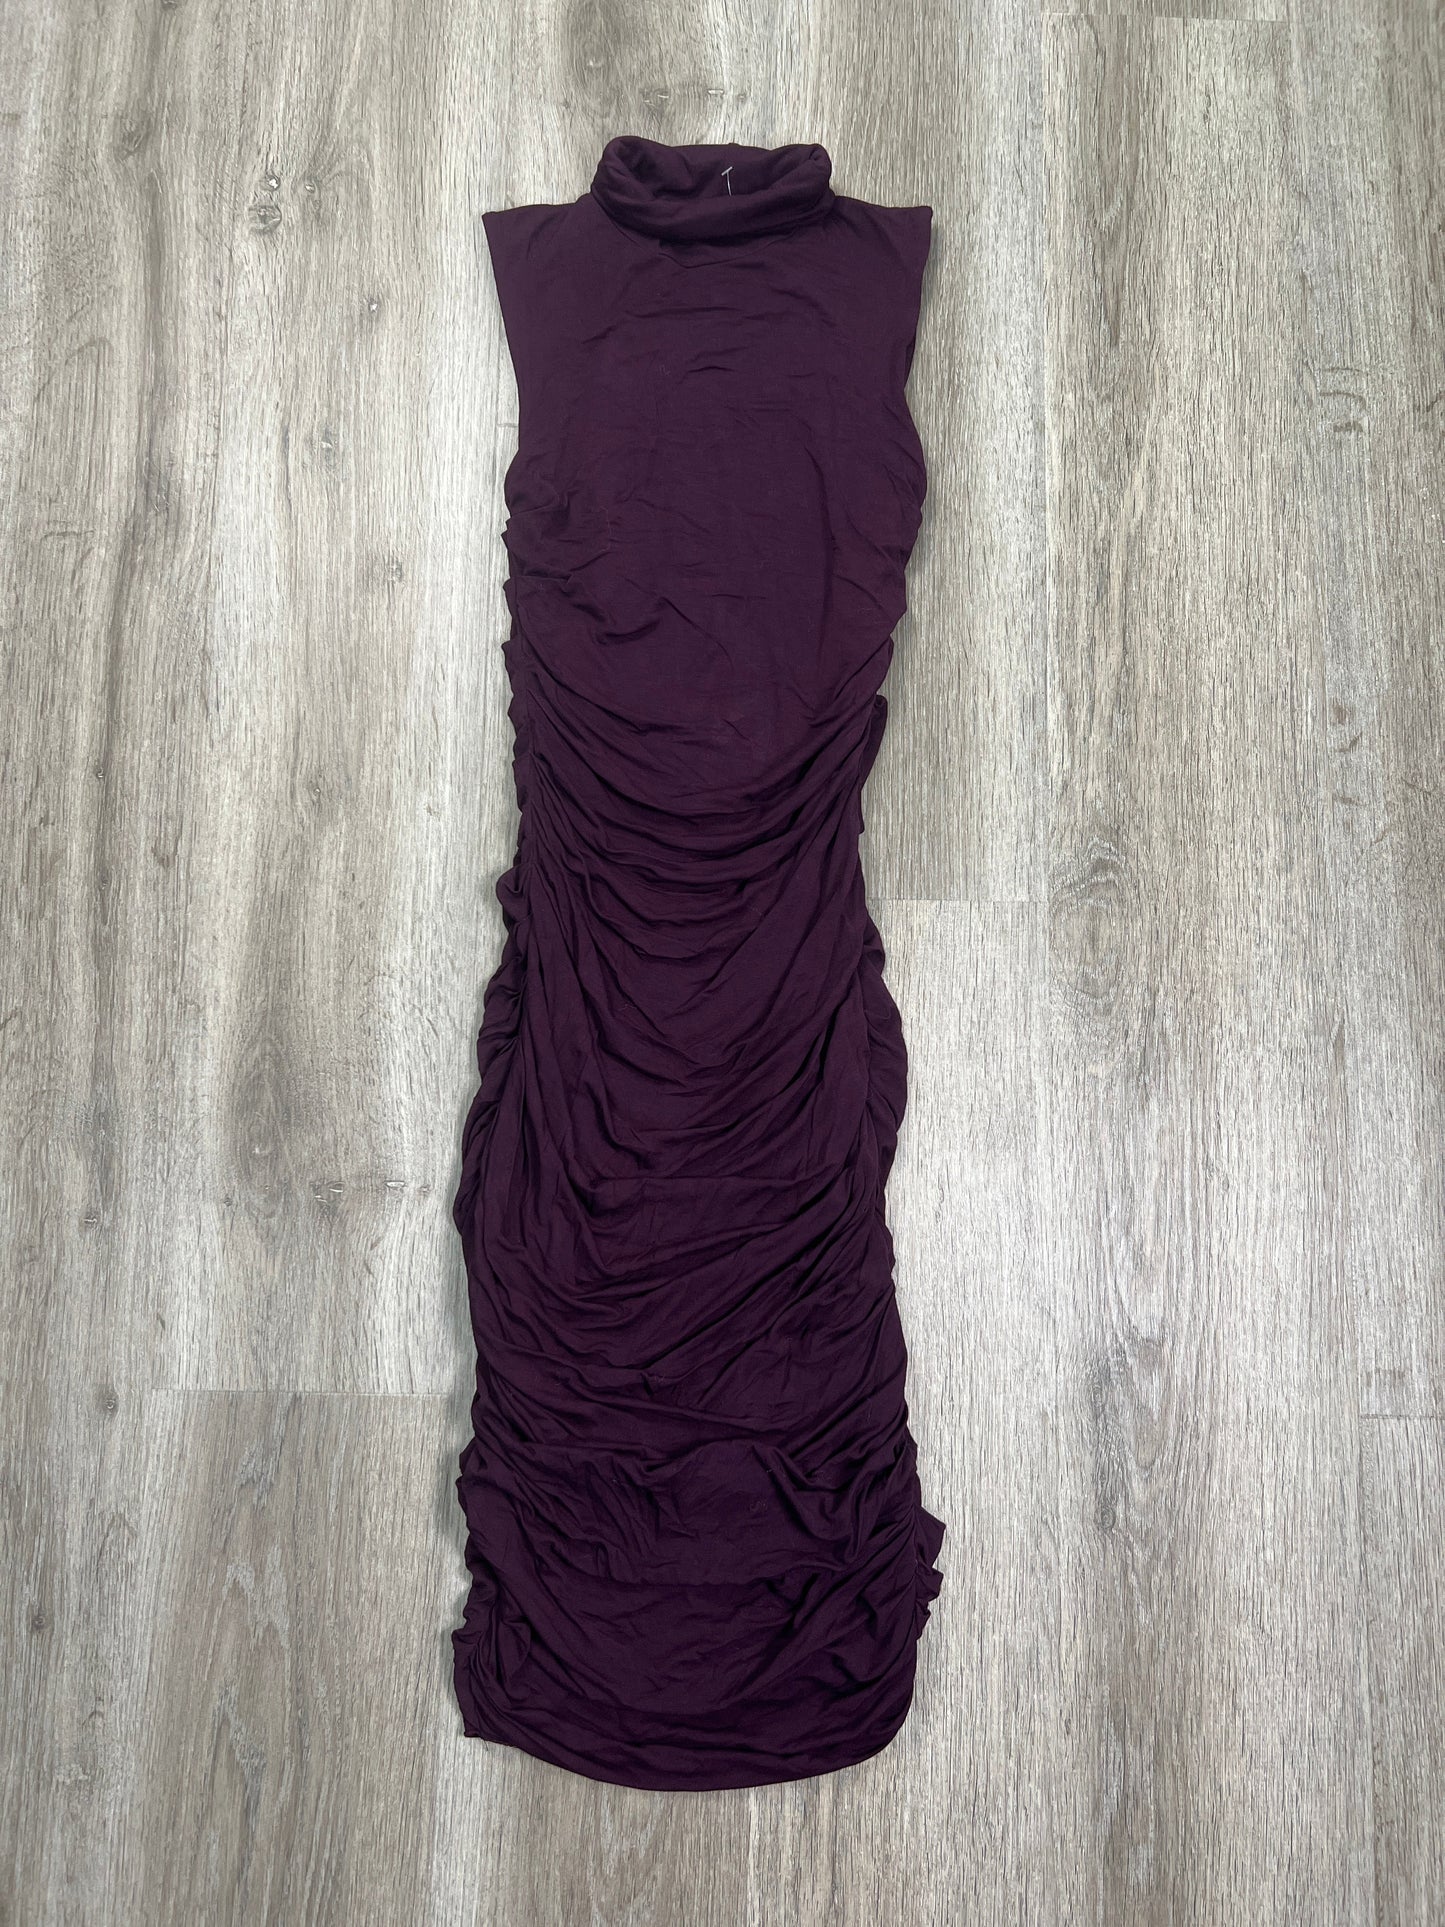 Dress Casual Midi By Bailey 44  Size: Xs